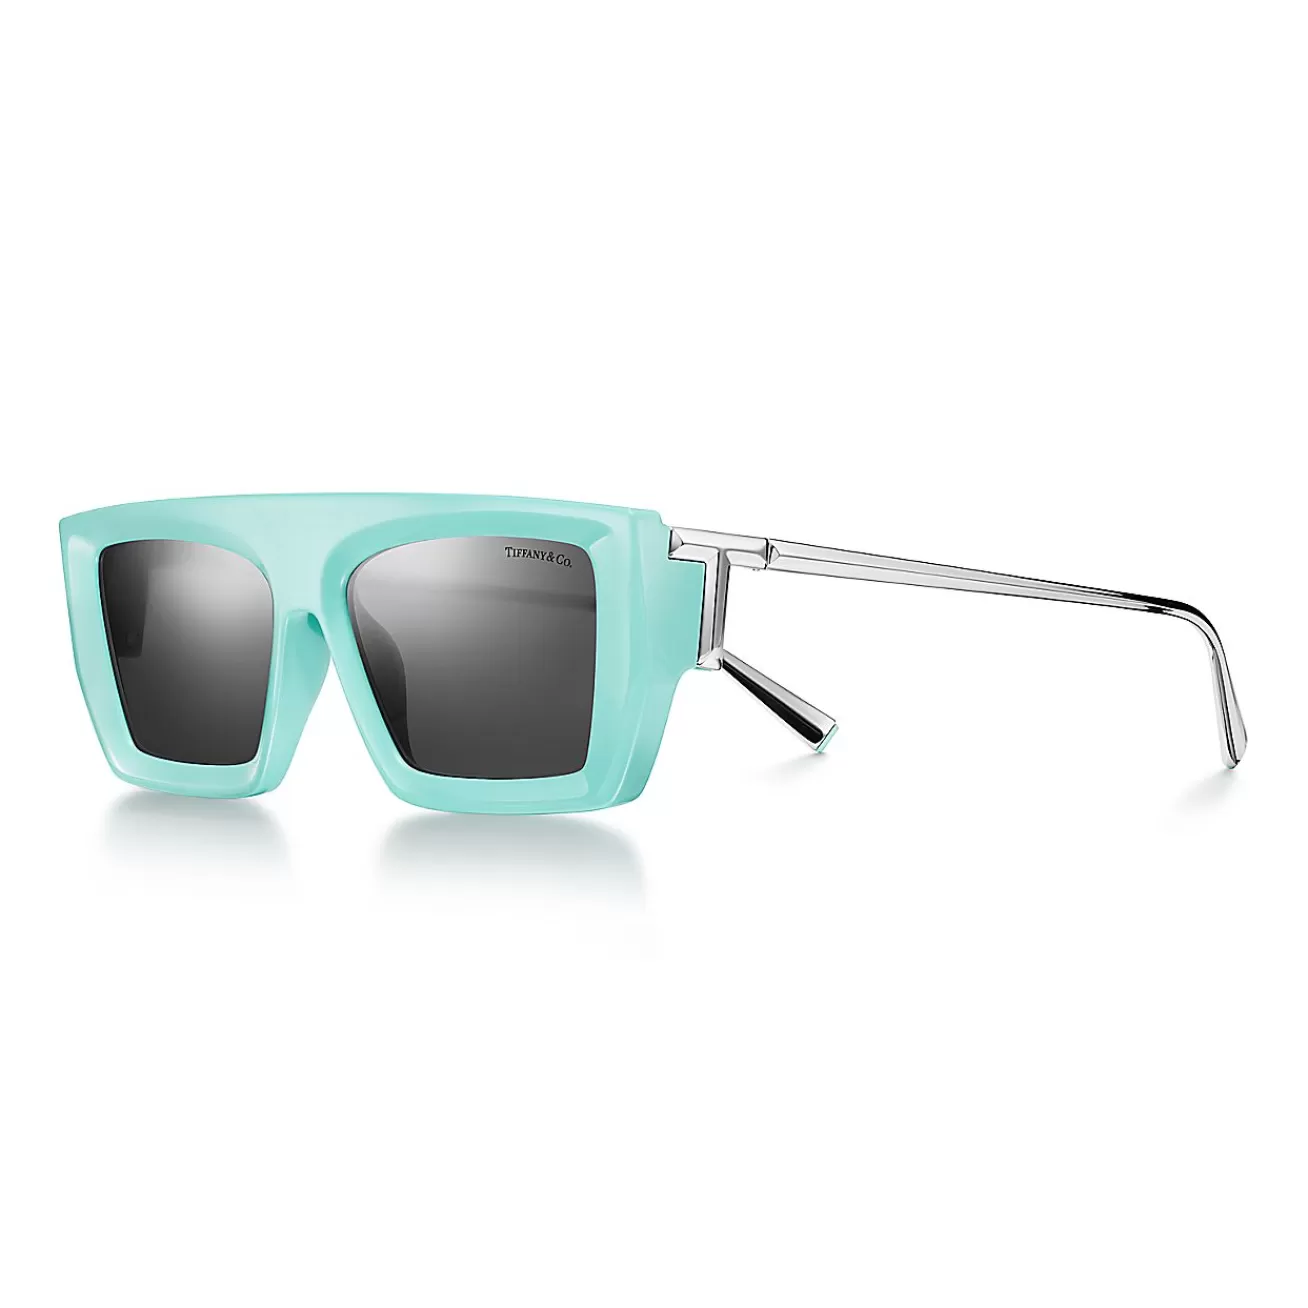 Tiffany & Co. Tiffany T Sunglasses in Tiffany Blue® Acetate with Dark Gray Lenses | ^Women Tiffany T | Tiffany Blue® Gifts